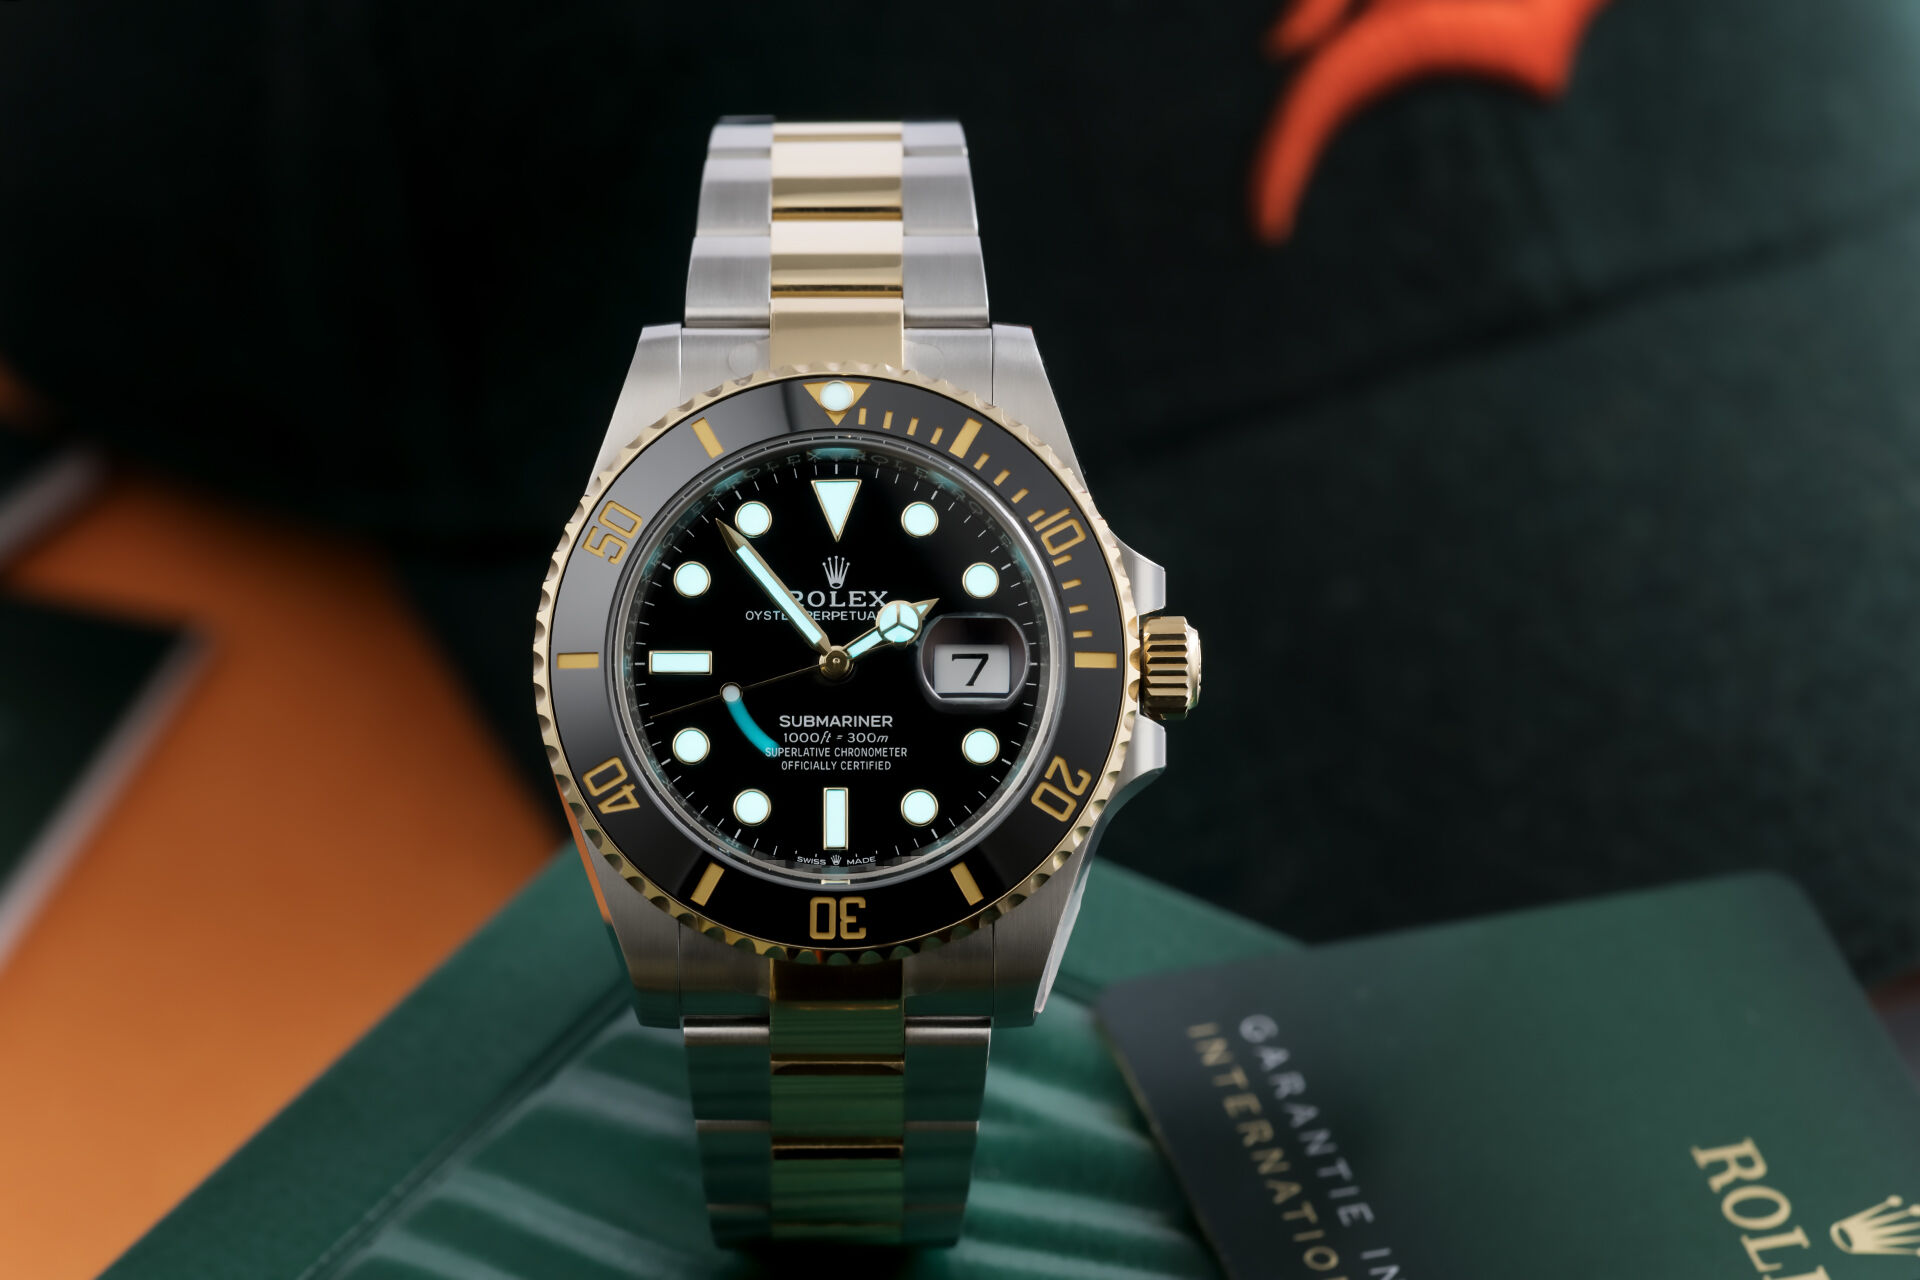 ref 126613LN | 5 Year Rolex Warranty | Rolex Submariner Date